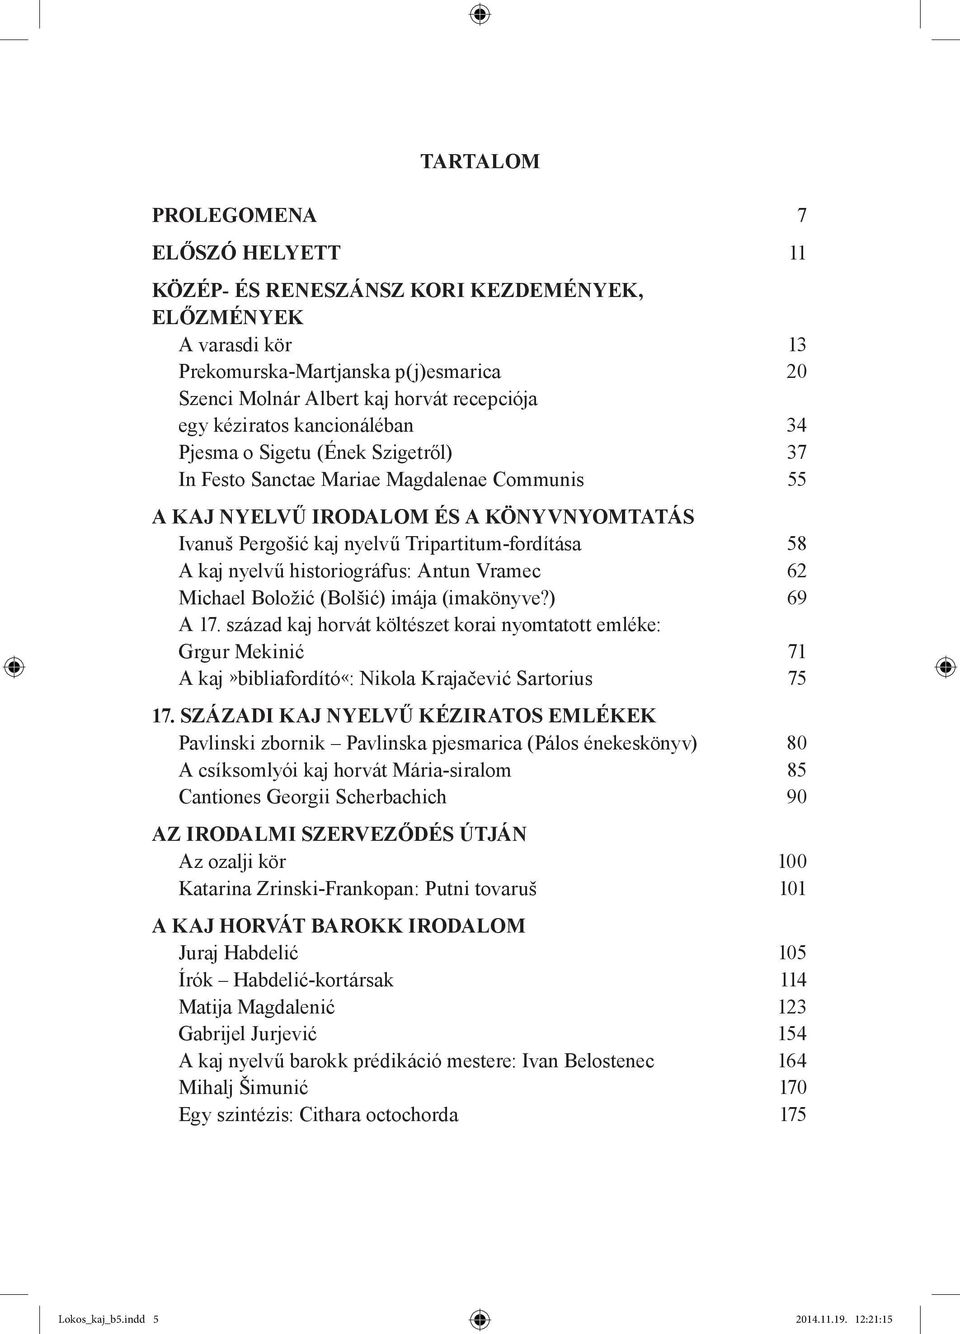 Tripartitum-fordítása 58 A kaj nyelvű historiográfus: Antun Vramec 62 Michael Boložić (Bolšić) imája (imakönyve?) 69 A 17.